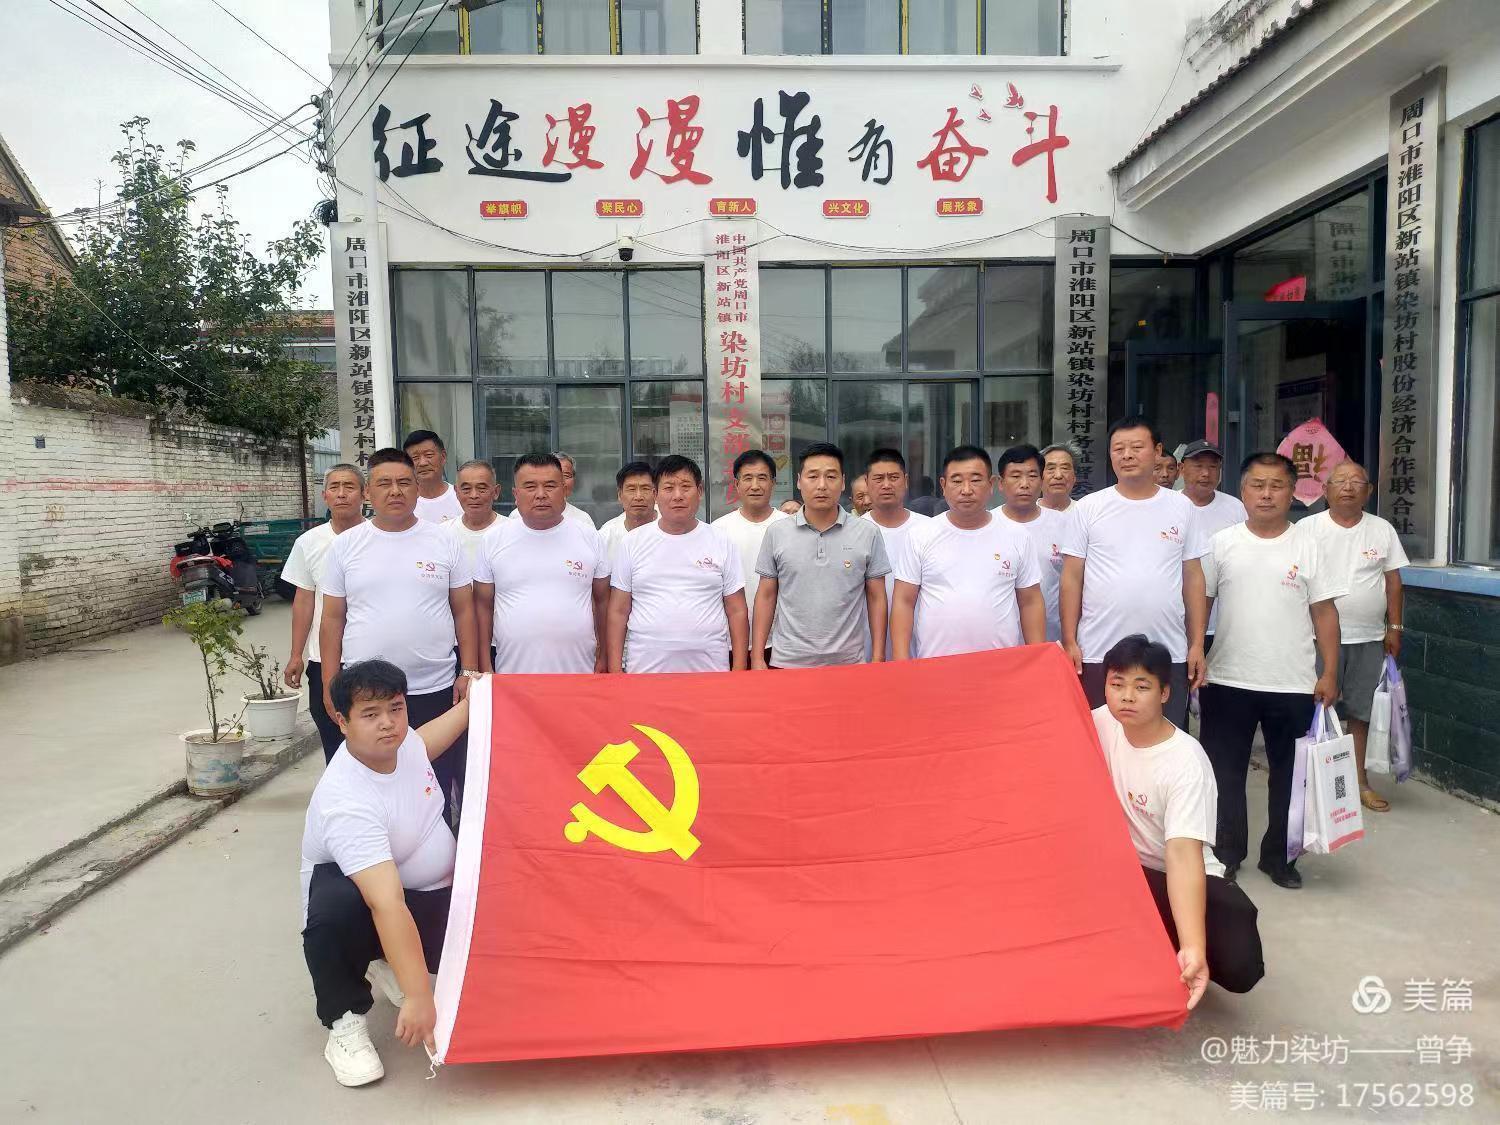 《不忘初心，砥砺前行》——记染坊村庆祝中国共产党成立103周年活动纪实